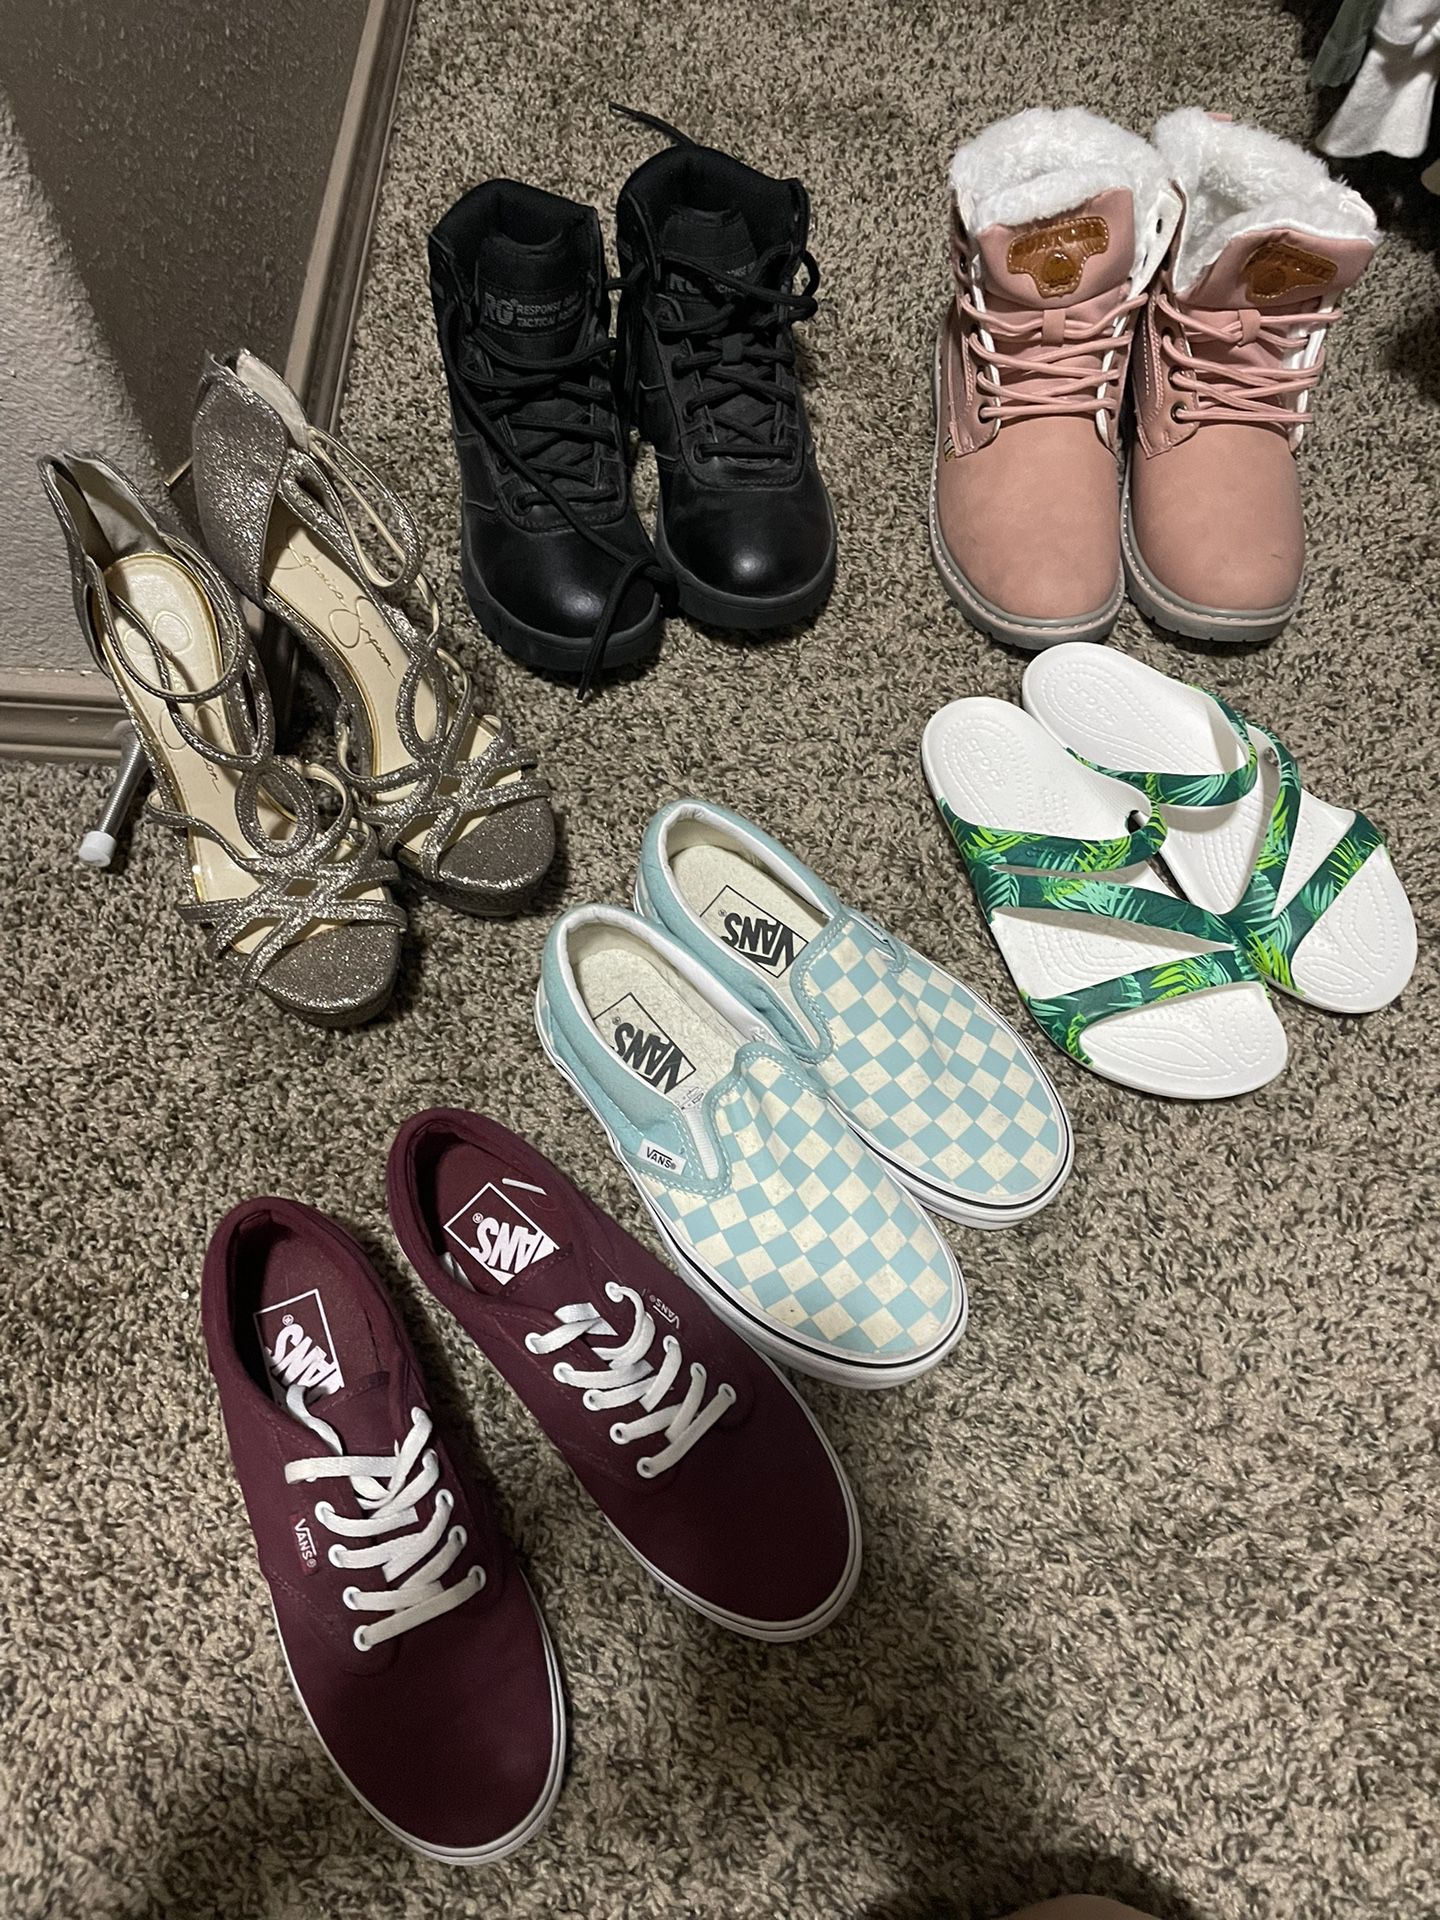 Women’s Shoes 5.0-5.5 